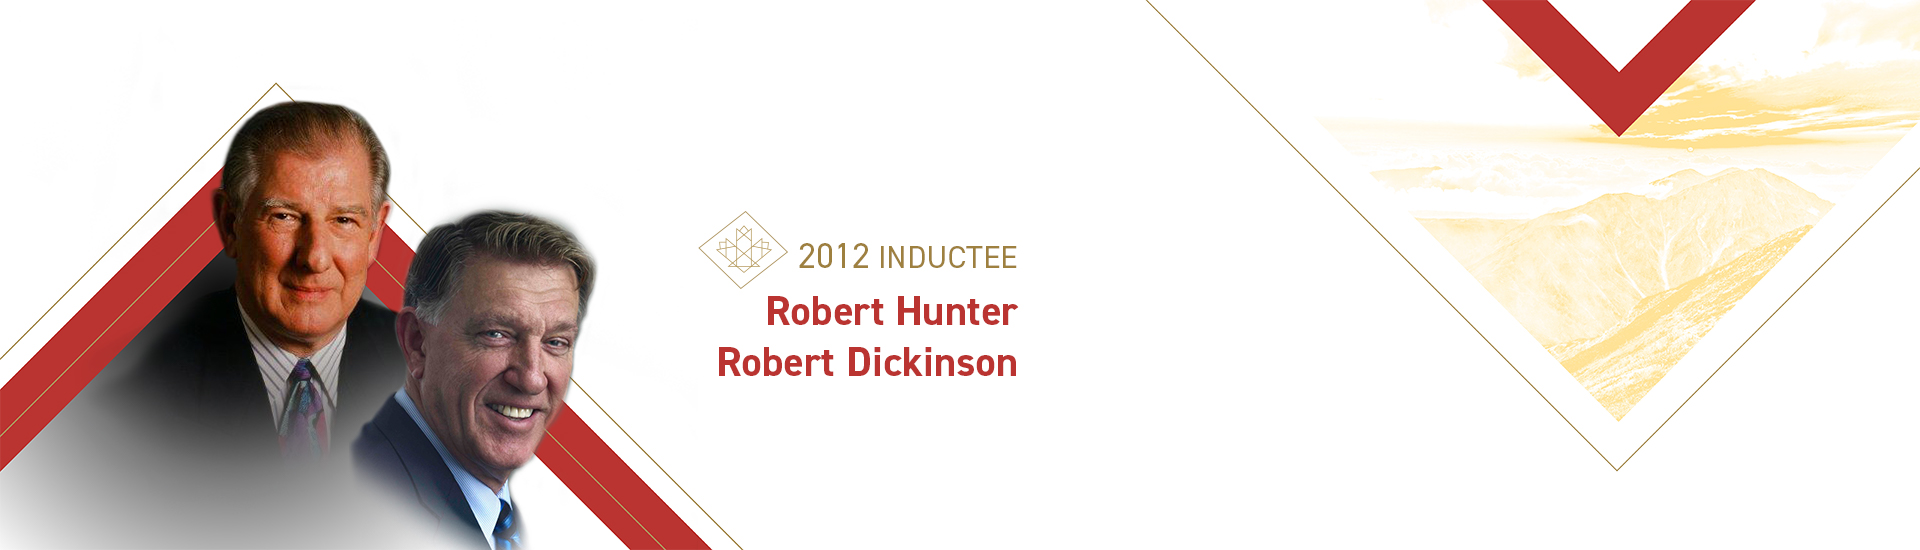 Robert Hunter (1927 – 2007) and Robert Dickinson (b. 1948)